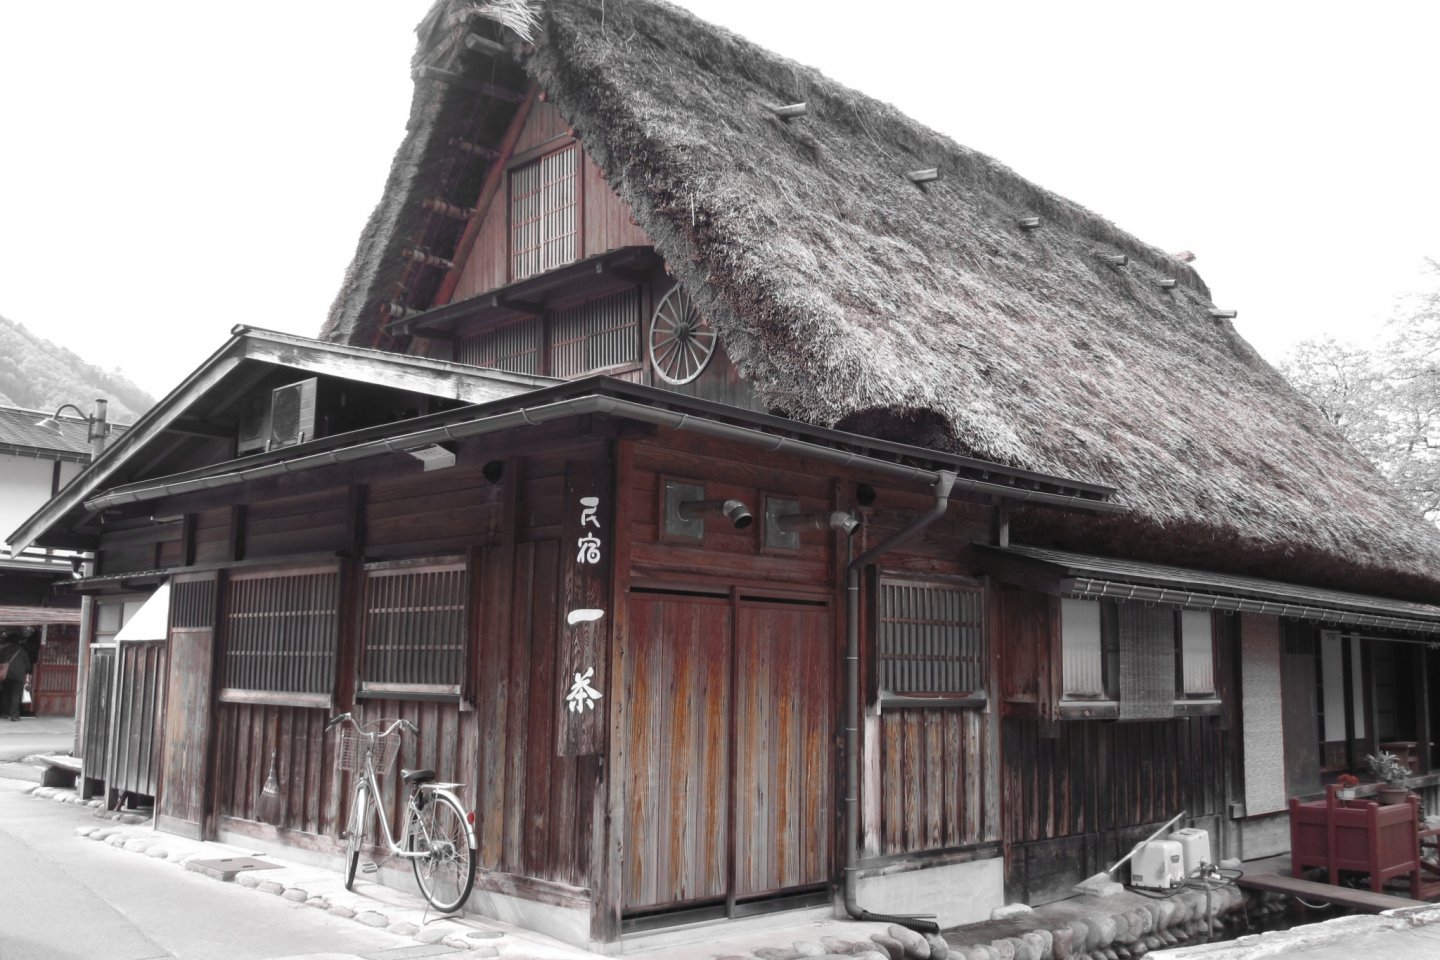 บ้านที่สร้างด้วยสถาปัตยกรรมแบบกัสโชซึคุริ ซึ่งหลังคามีความลาดเอียง 60 องศาดูคล้ายคนพนมมือ